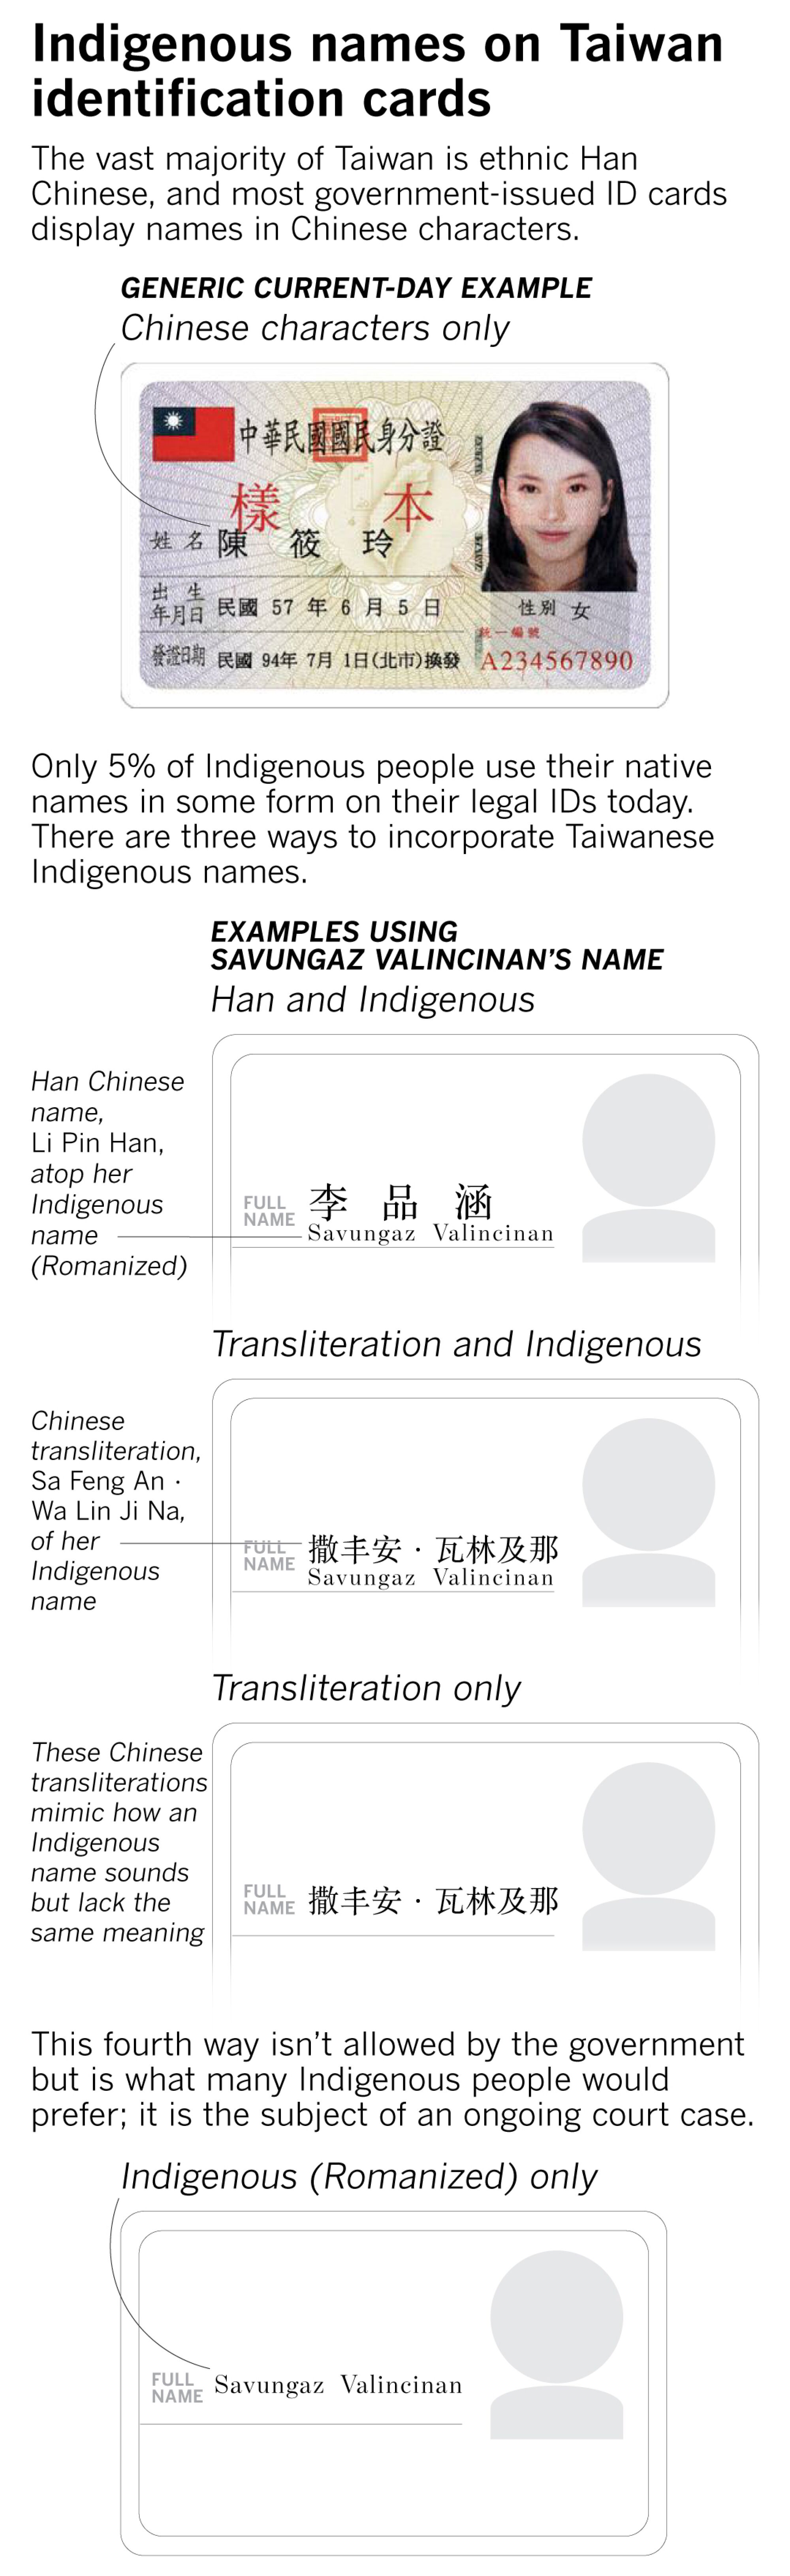 Bugün Tayvanlı Yerlilerin yalnızca %5'i kimliklerde yerel adlar kullanıyor ve yalnızca Yerli adlarını görüntüleme seçeneği yok